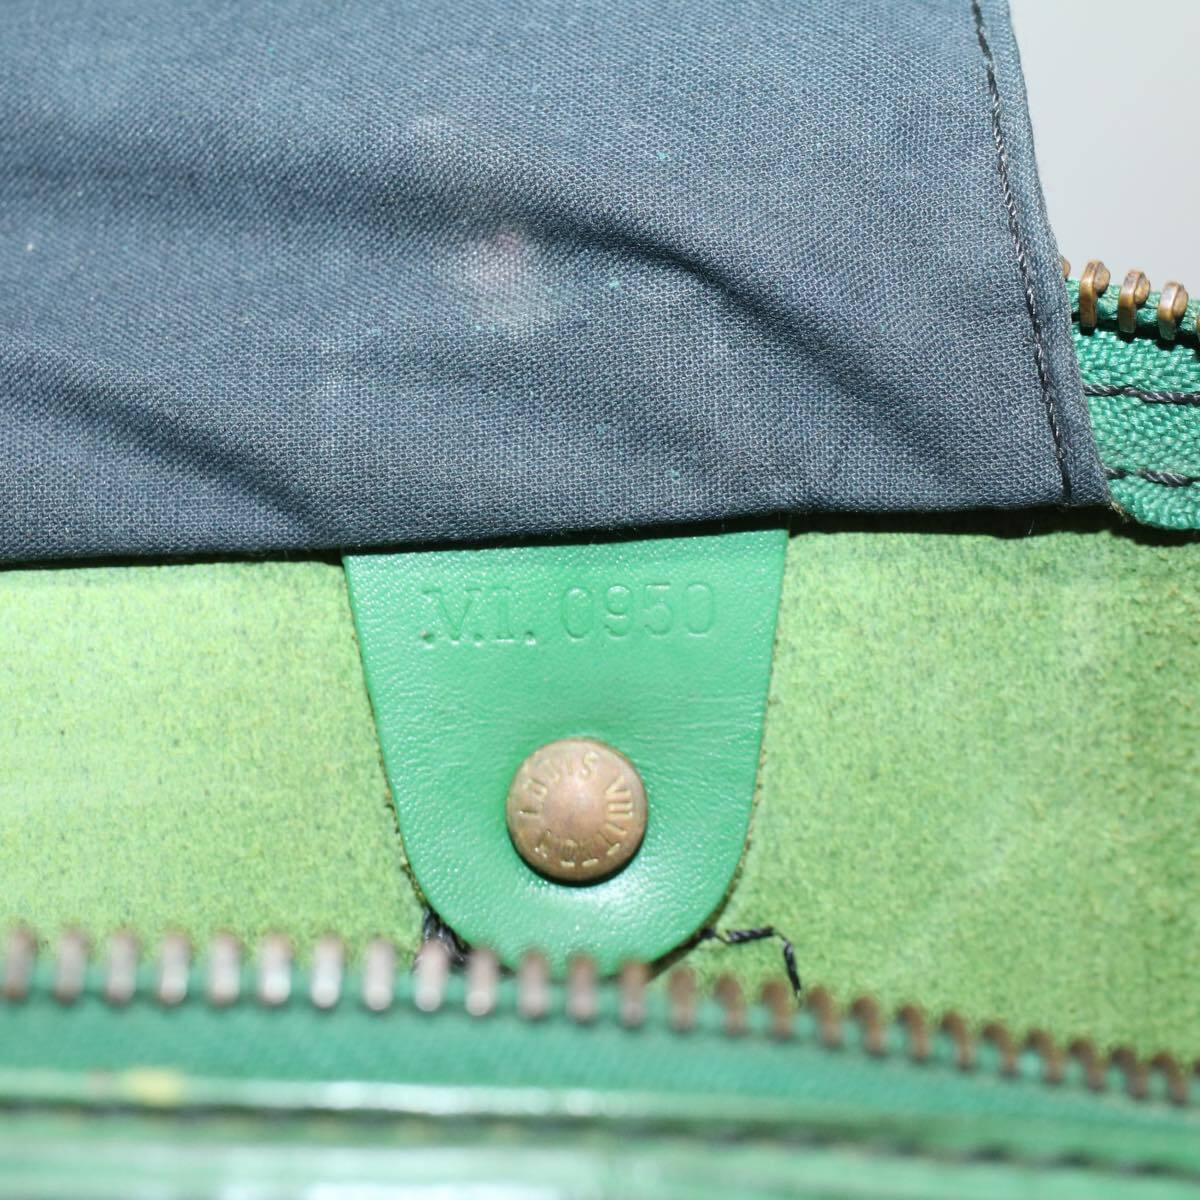 Louis Vuitton Epi Speedy 35 Handbag Boston Bag M42994 Borneo Green Leather  Women's LOUIS VUITTON